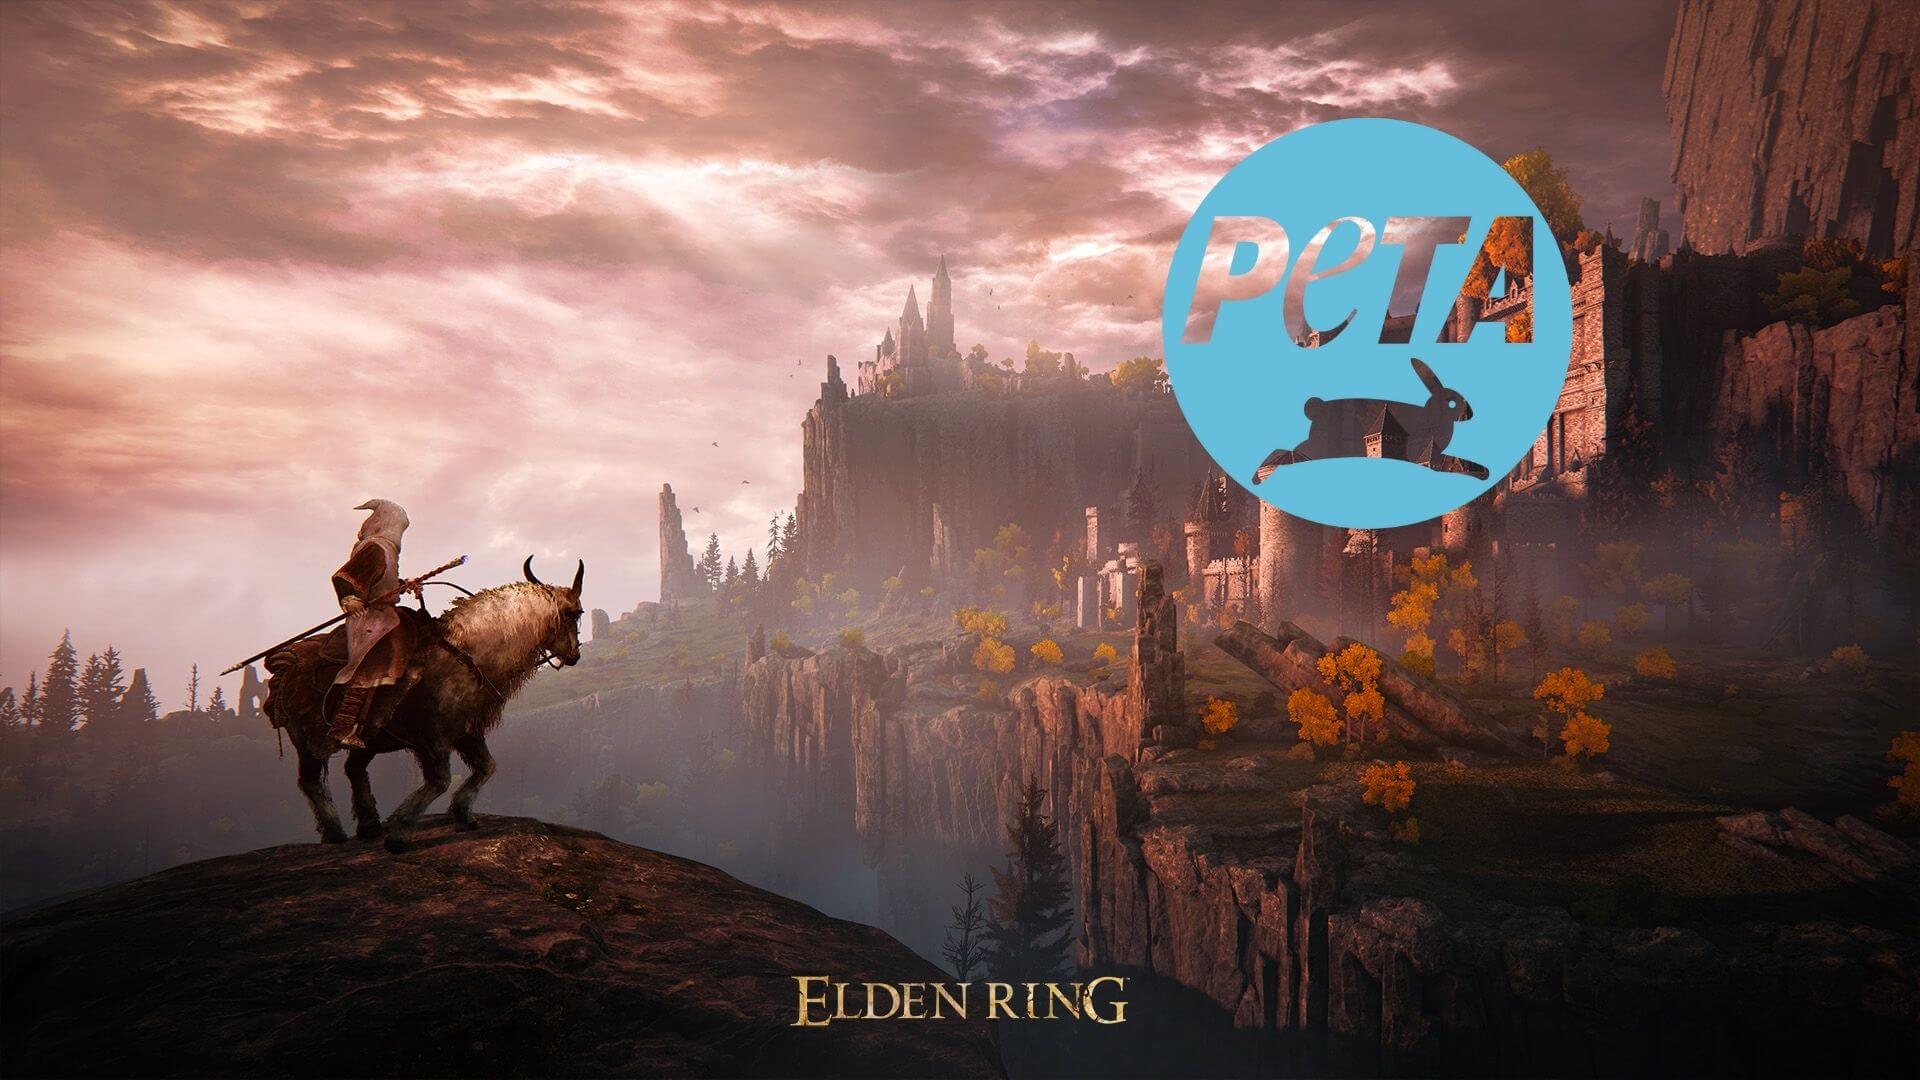 La PETA habla de Elden Ring en un curioso vídeo de humor